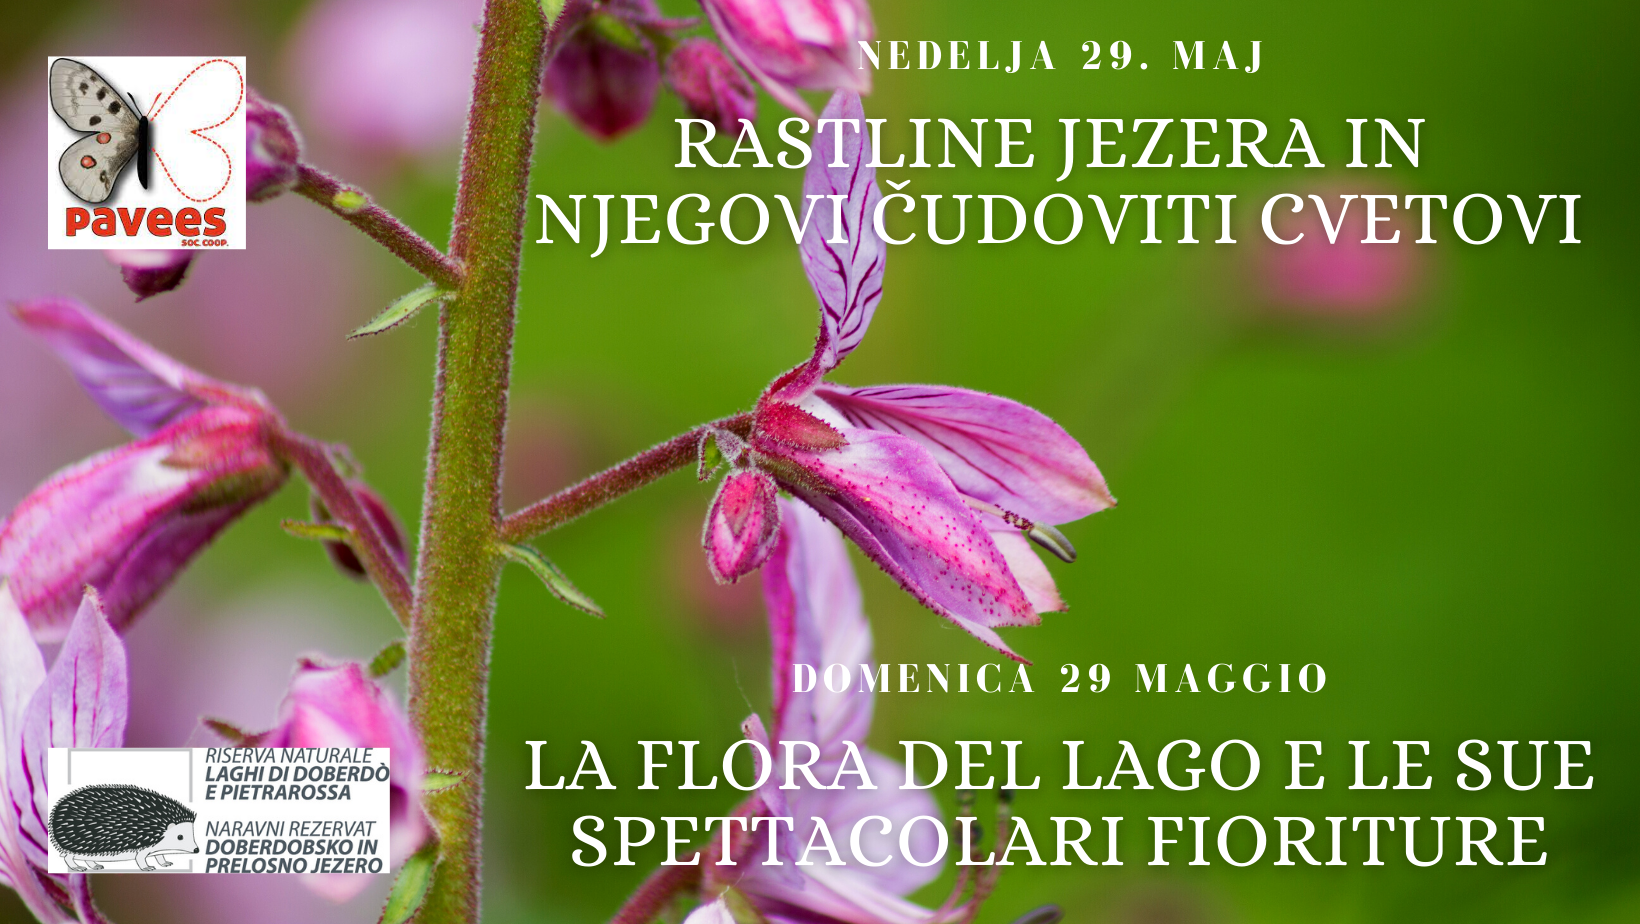 Domenica 29 maggio 2022 - La flora del lago e le sue spettacolari fioriture